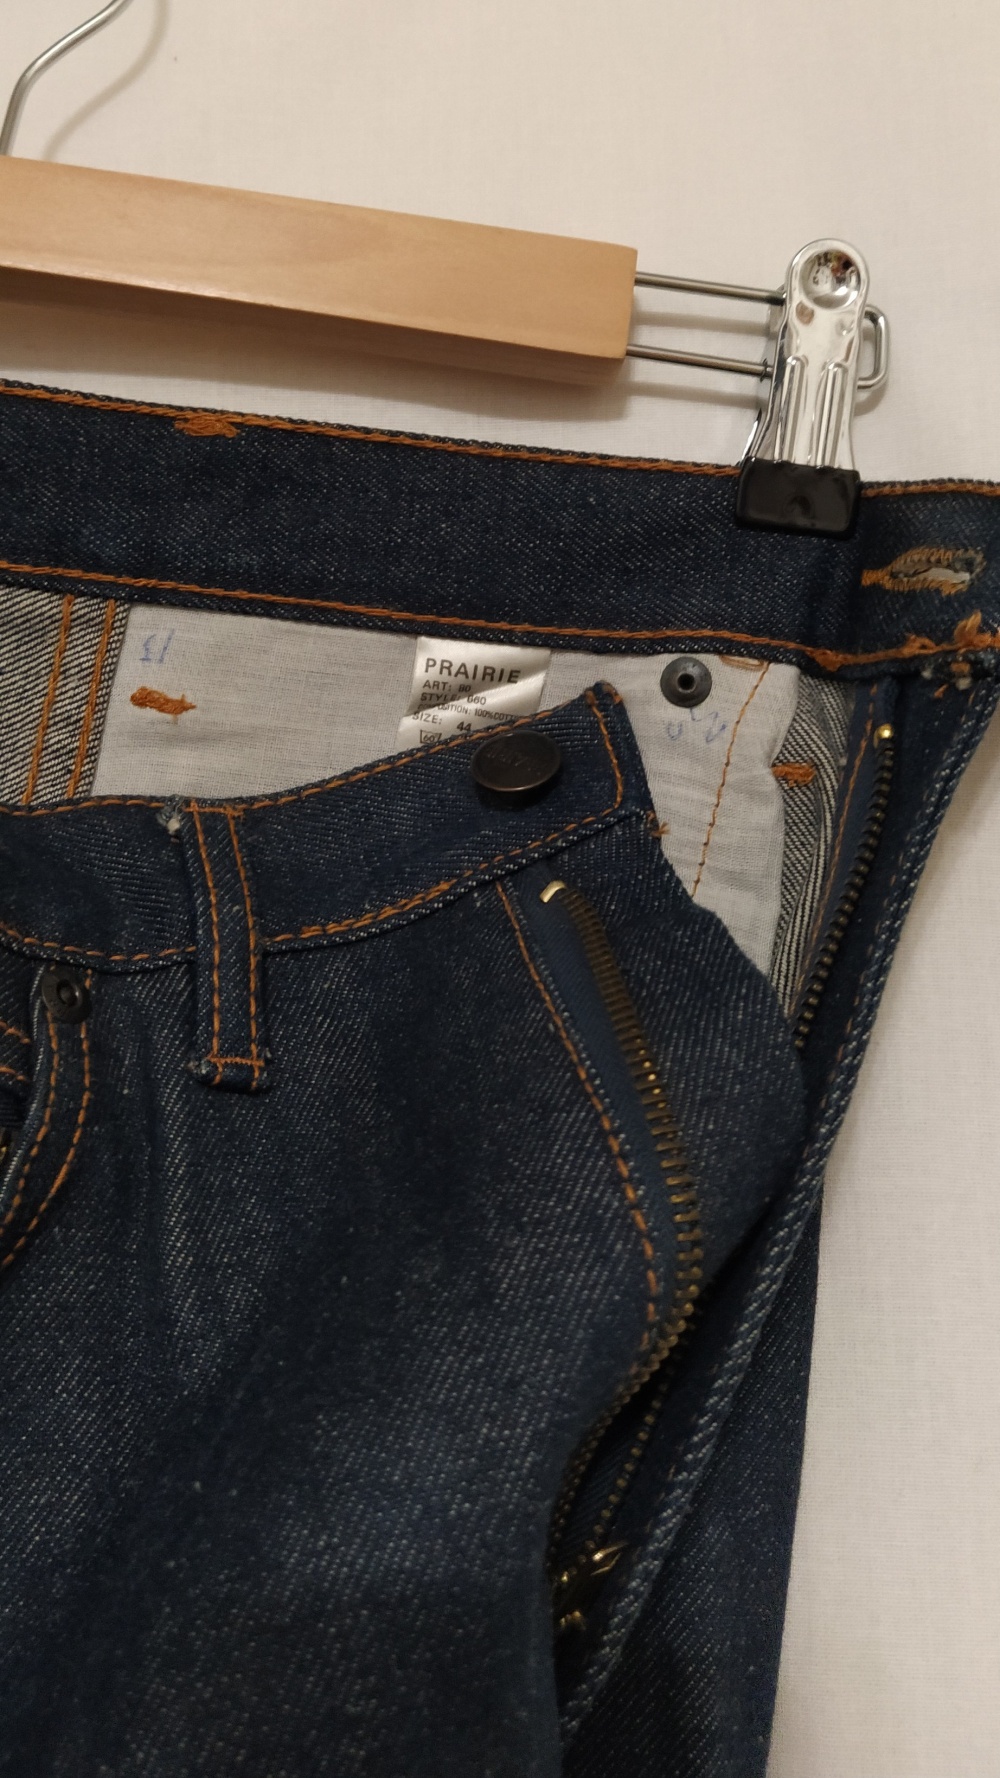 Джинсы The Original PRAIRIE Jeans, М